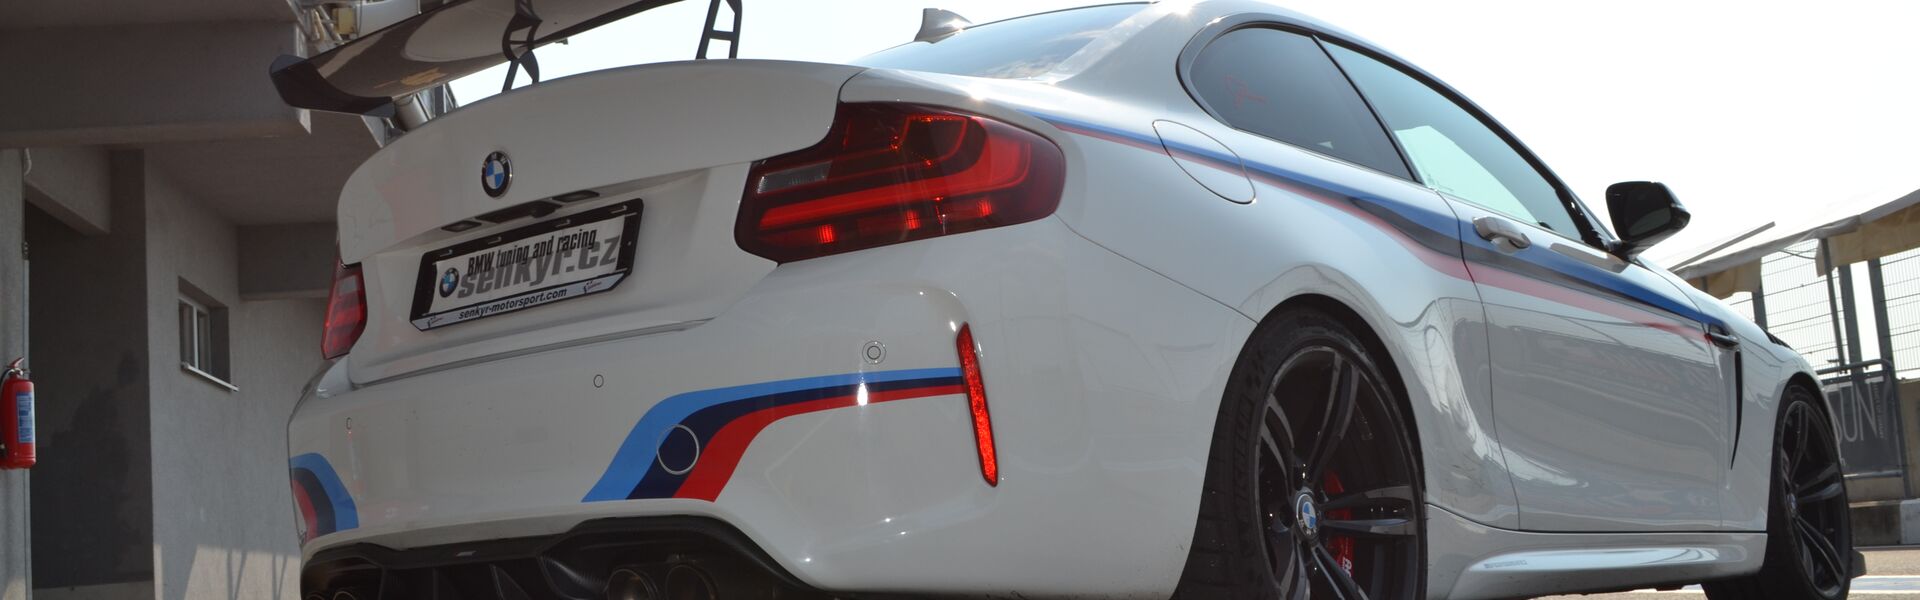 Bodykit/ Aerodynamické prvky pro automobil BMW M3 F80